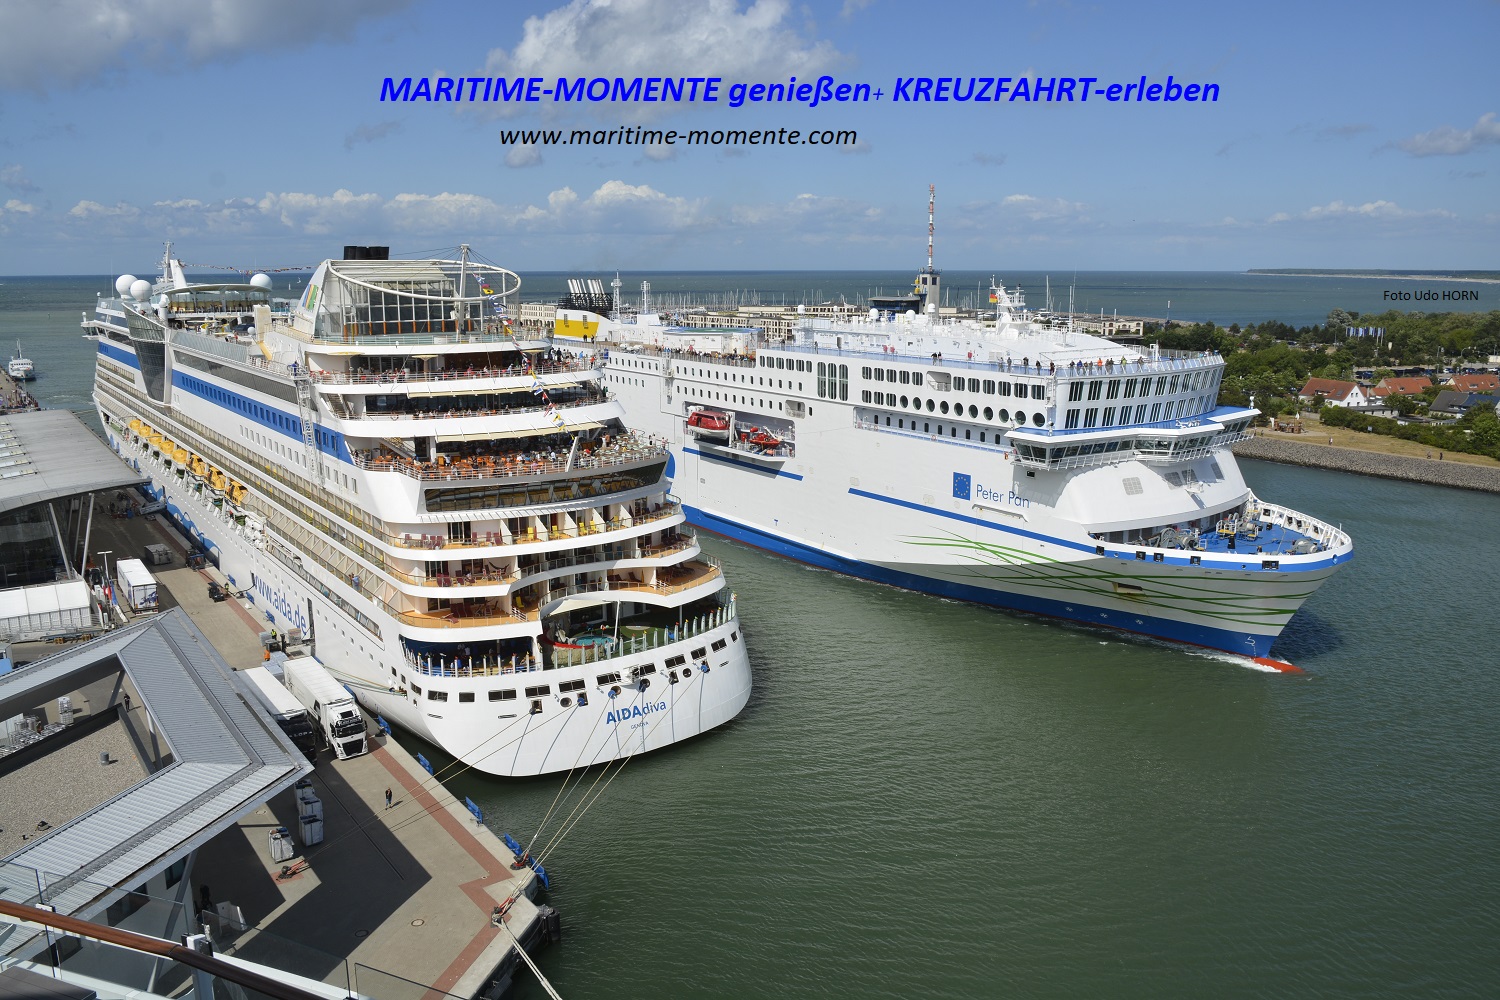 (c) Maritime-momente.com